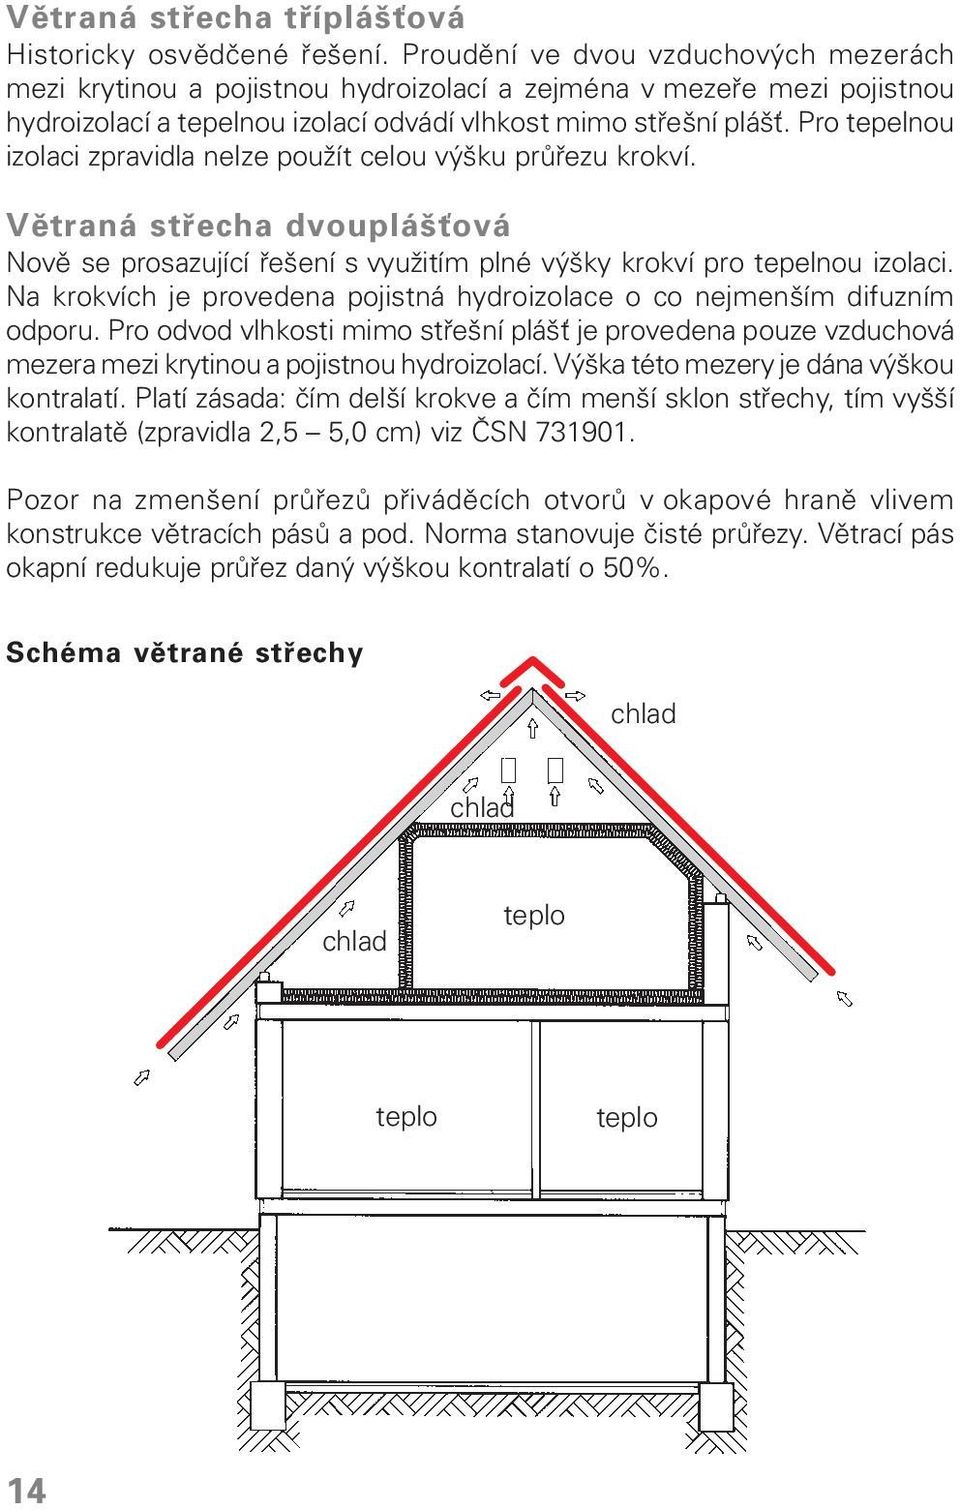 Pro tepelnou izolaci zpravidla nelze použít celou výšku průřezu krokví. Větraná střecha dvouplášťová Nově se prosazující řešení s využitím plné výšky krokví pro tepelnou izolaci.